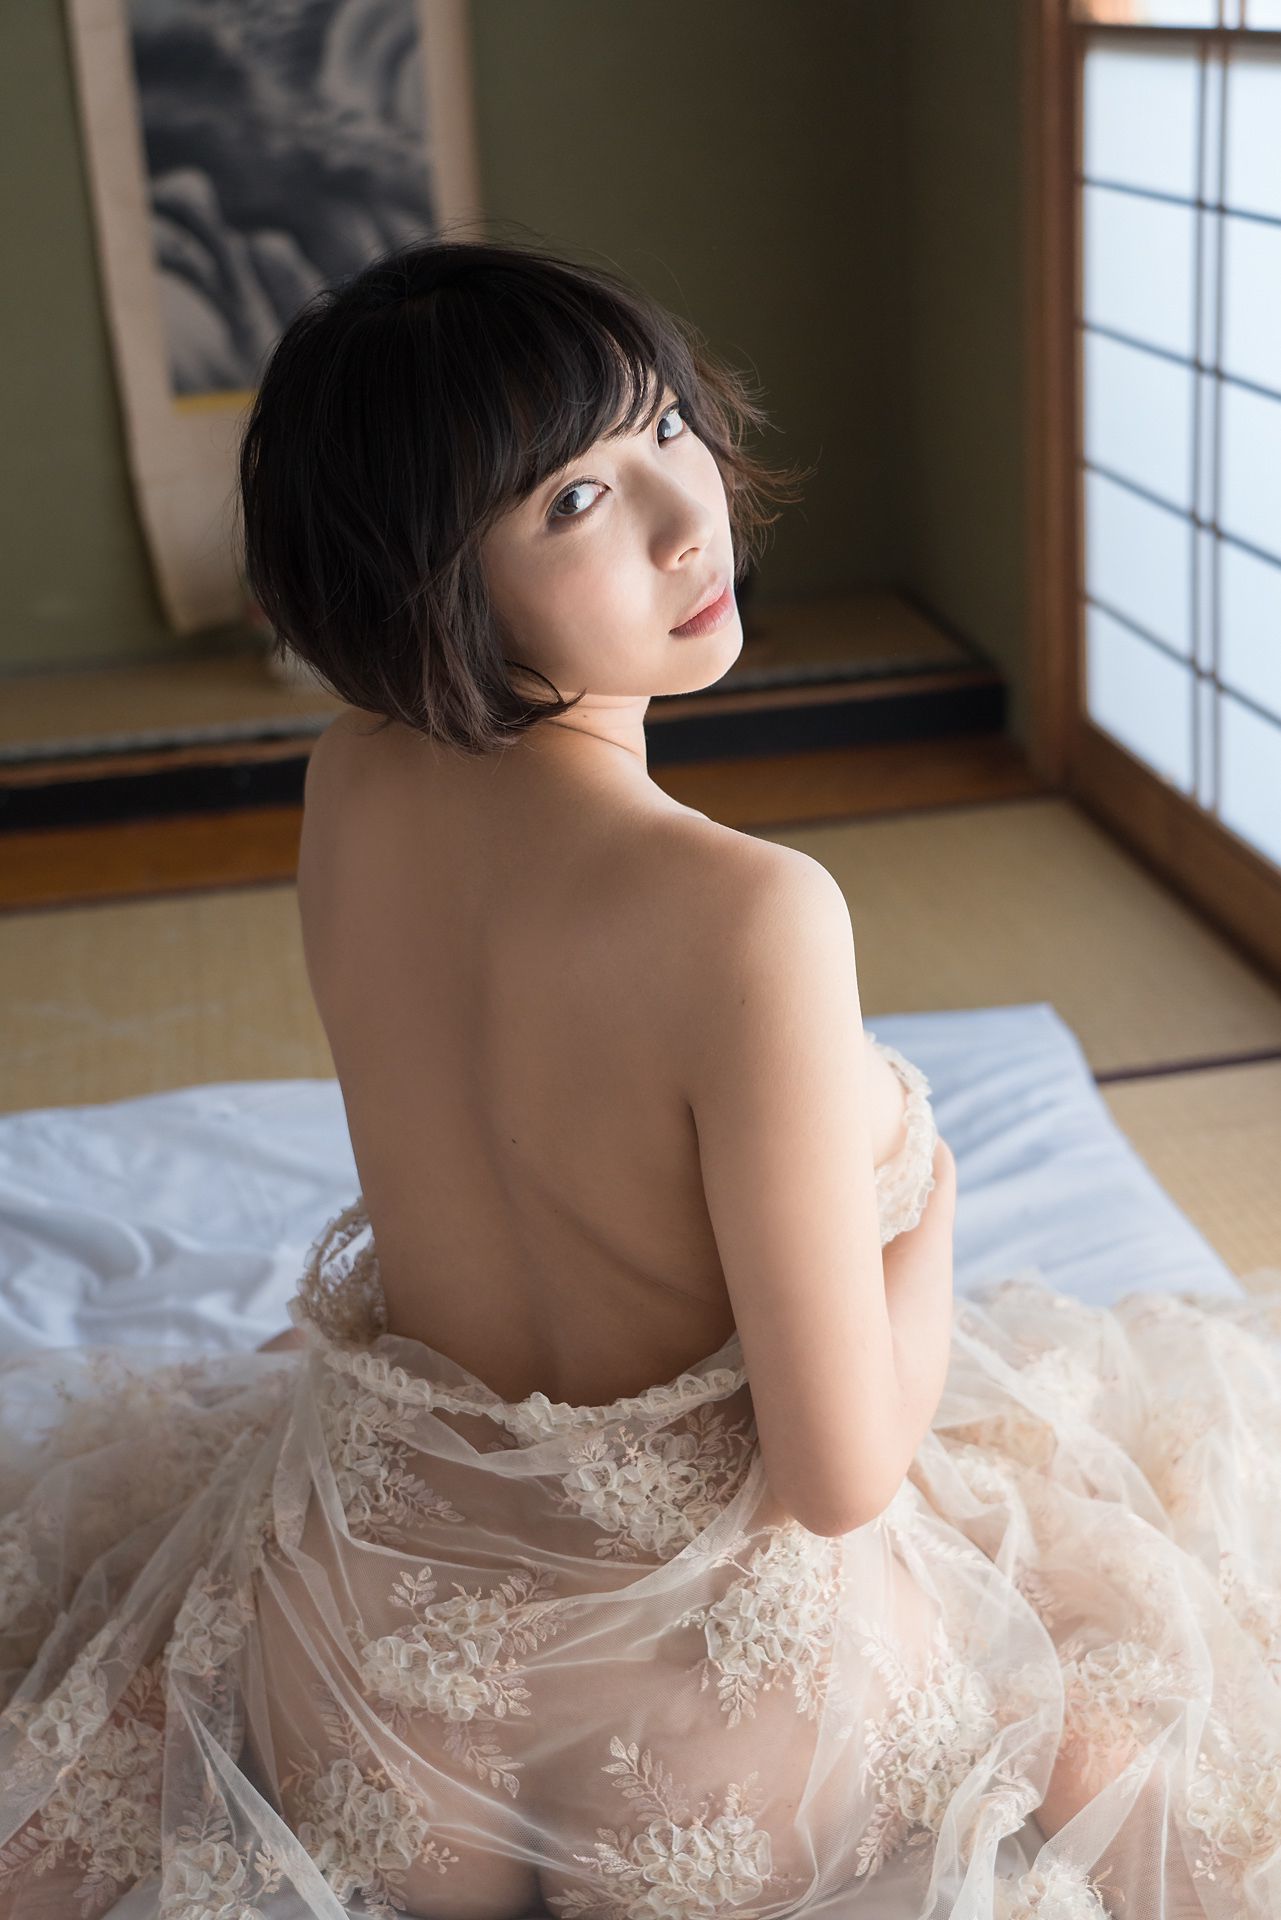 [Minisuka.tv] 麻倉まりな Marina Asakura - 蕾丝人体诱惑巨乳-第23张美女图片